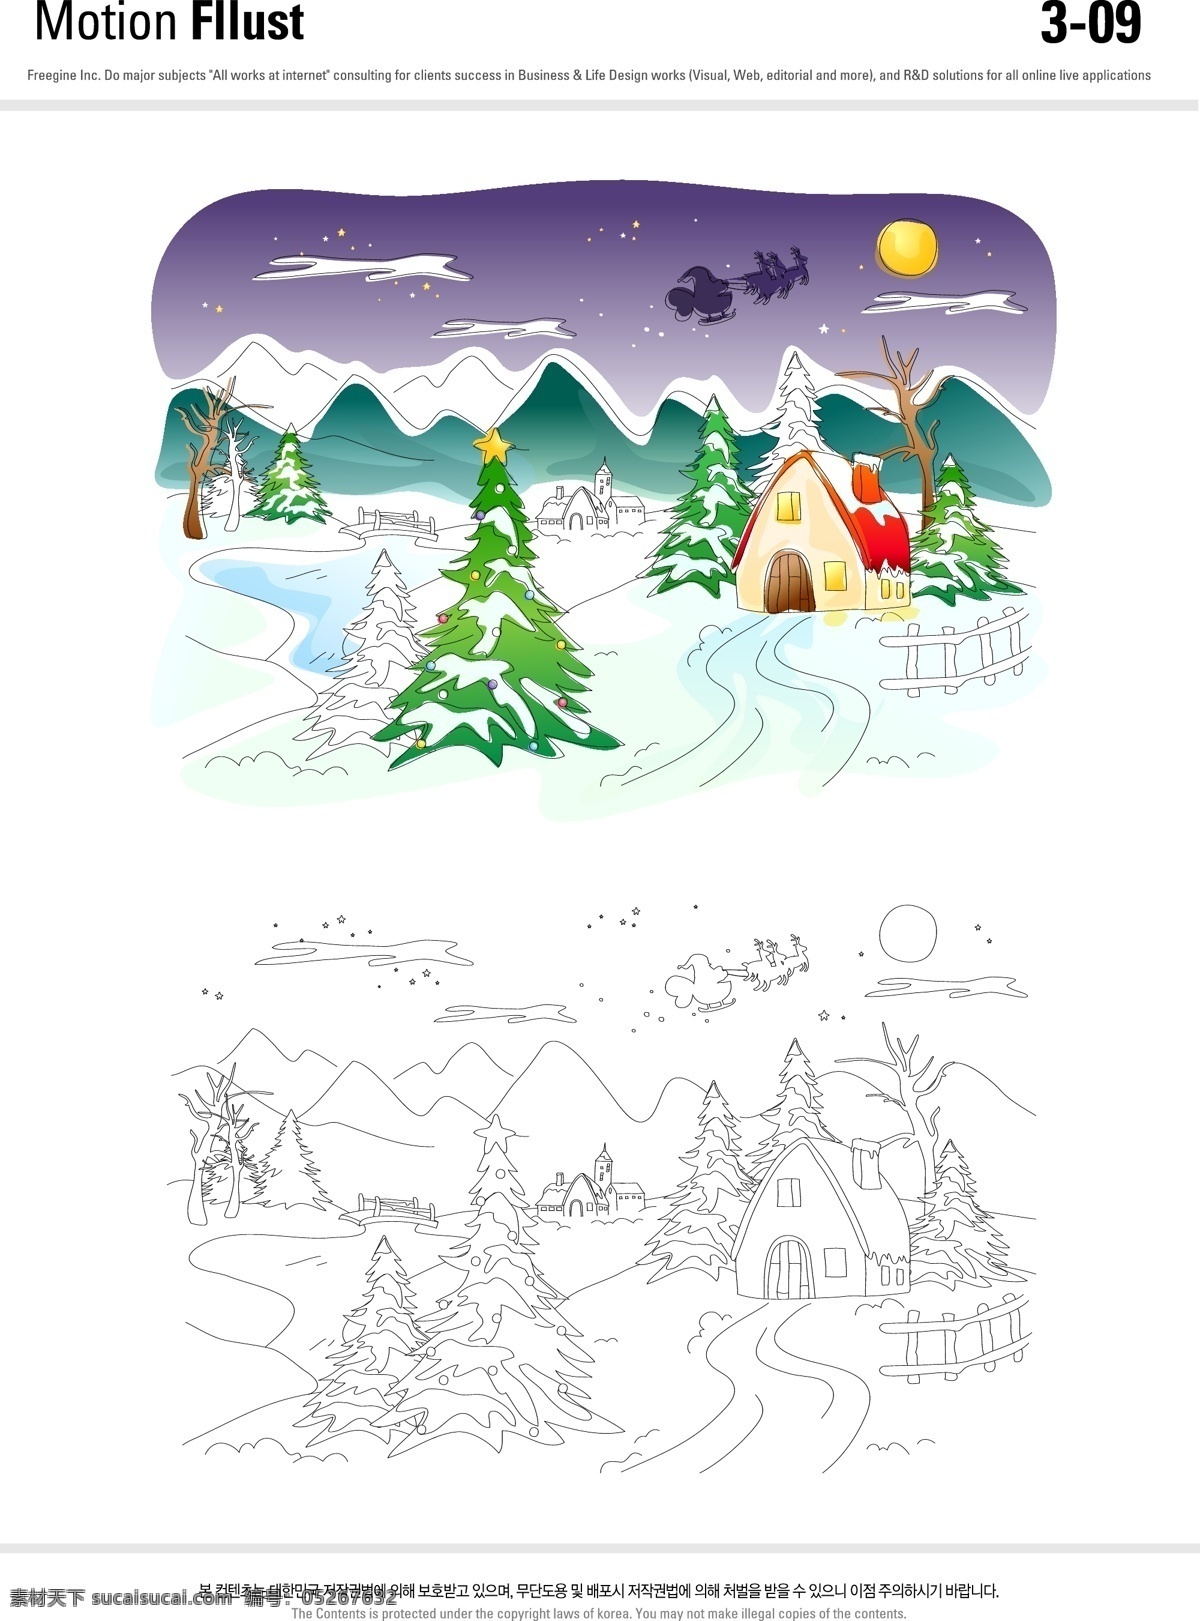 圣诞 插画 动漫动画 风景漫画 圣诞小屋 圣诞夜 矢量插画 松树 雪景 雪夜 圣诞老师 卡通 动漫 可爱